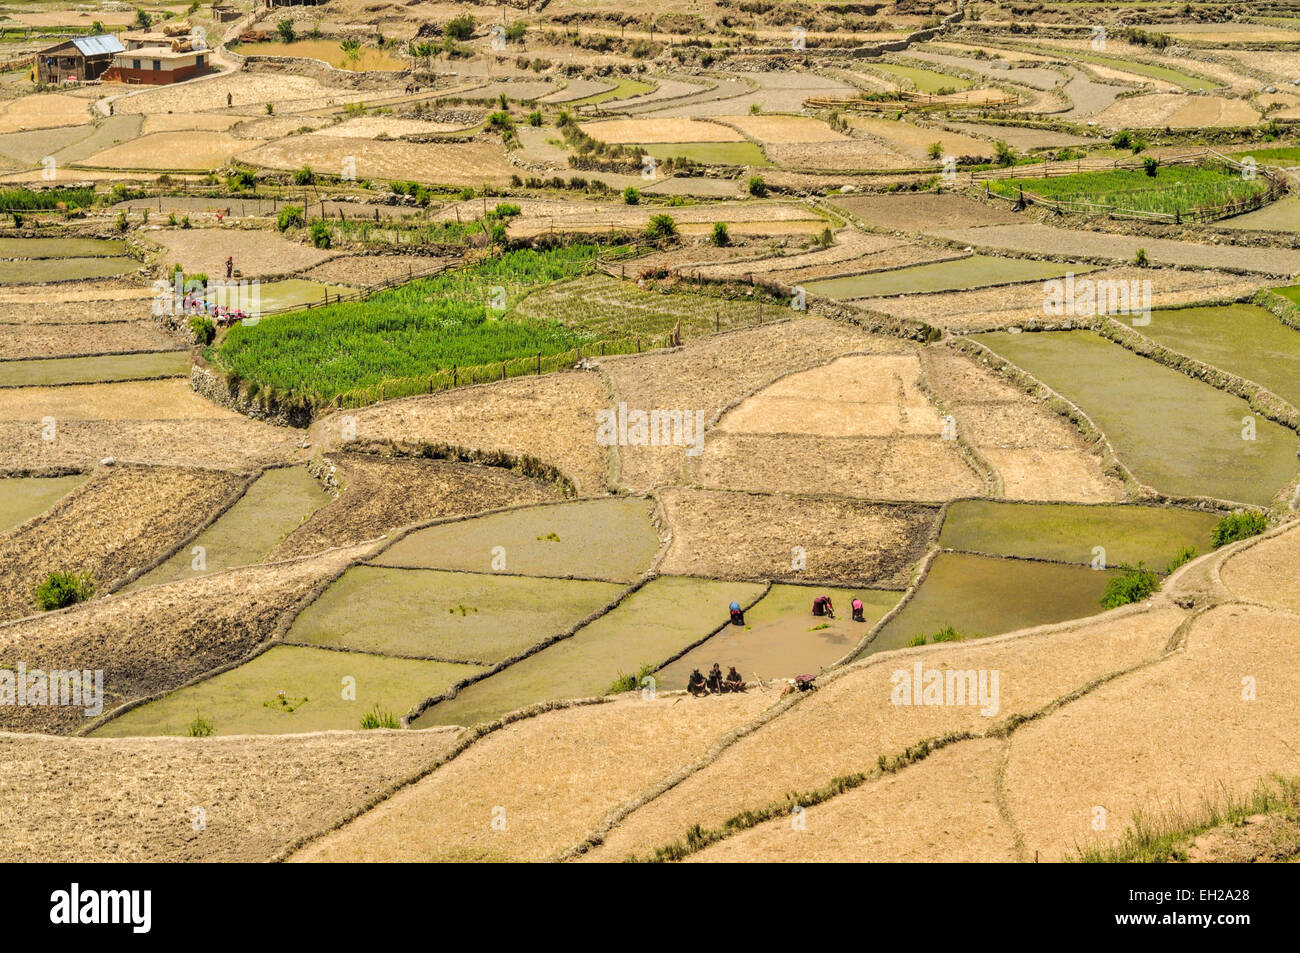 Vue panoramique de l'agriculture traditionnelle au Népal Banque D'Images